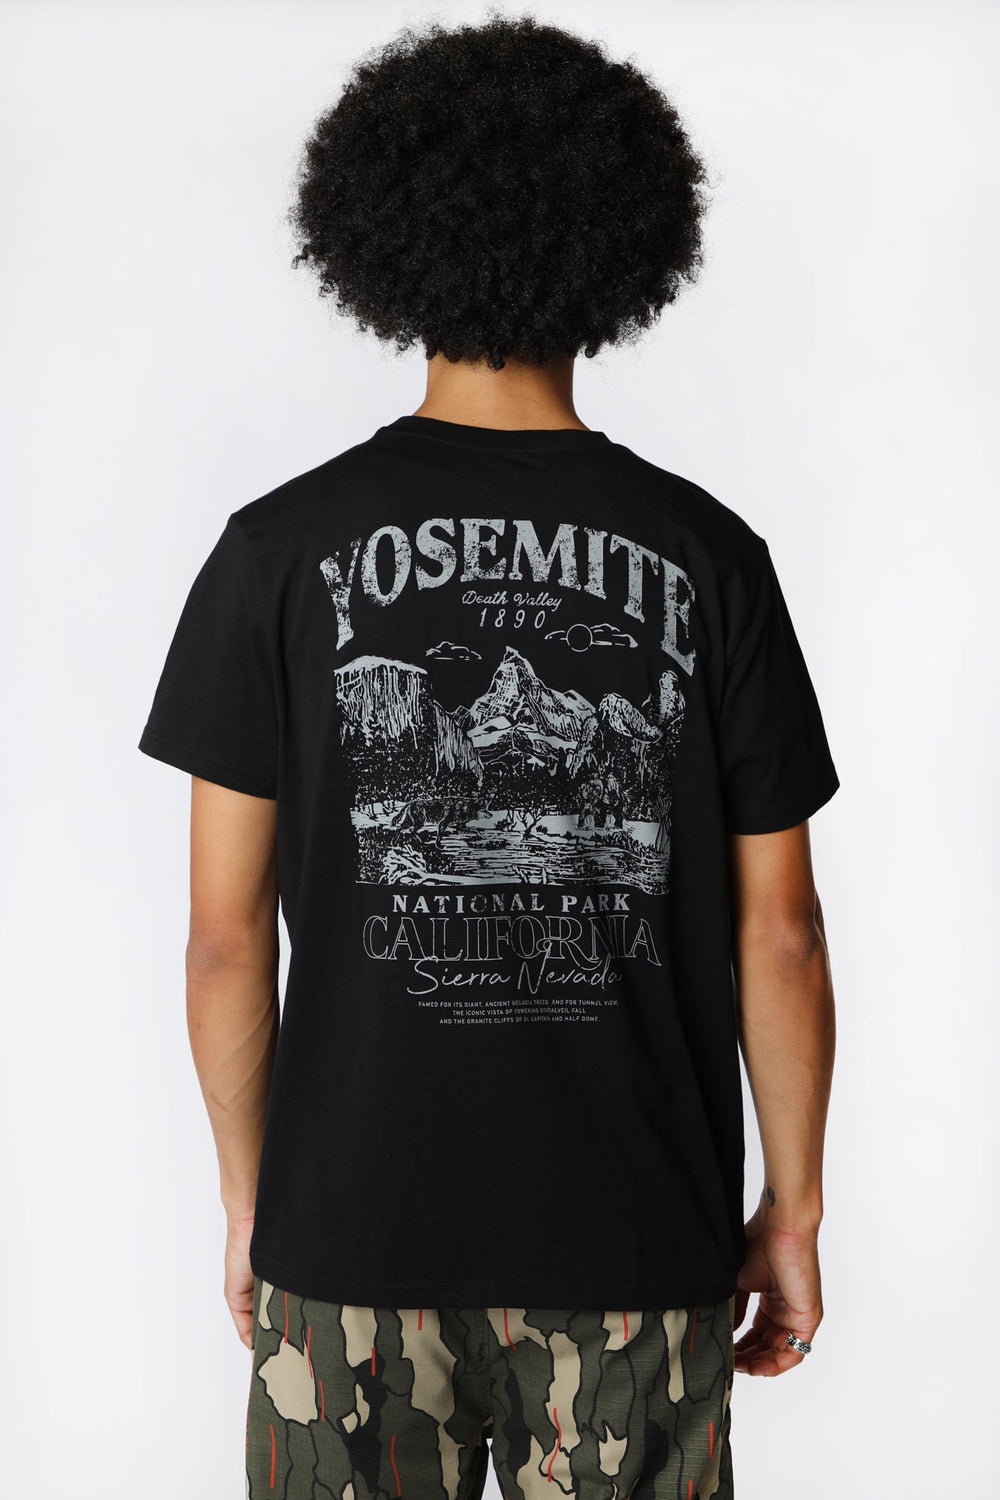 T-Shirt Imprimé Yosemite Death Valley Homme T-Shirt Imprimé Yosemite Death Valley Homme